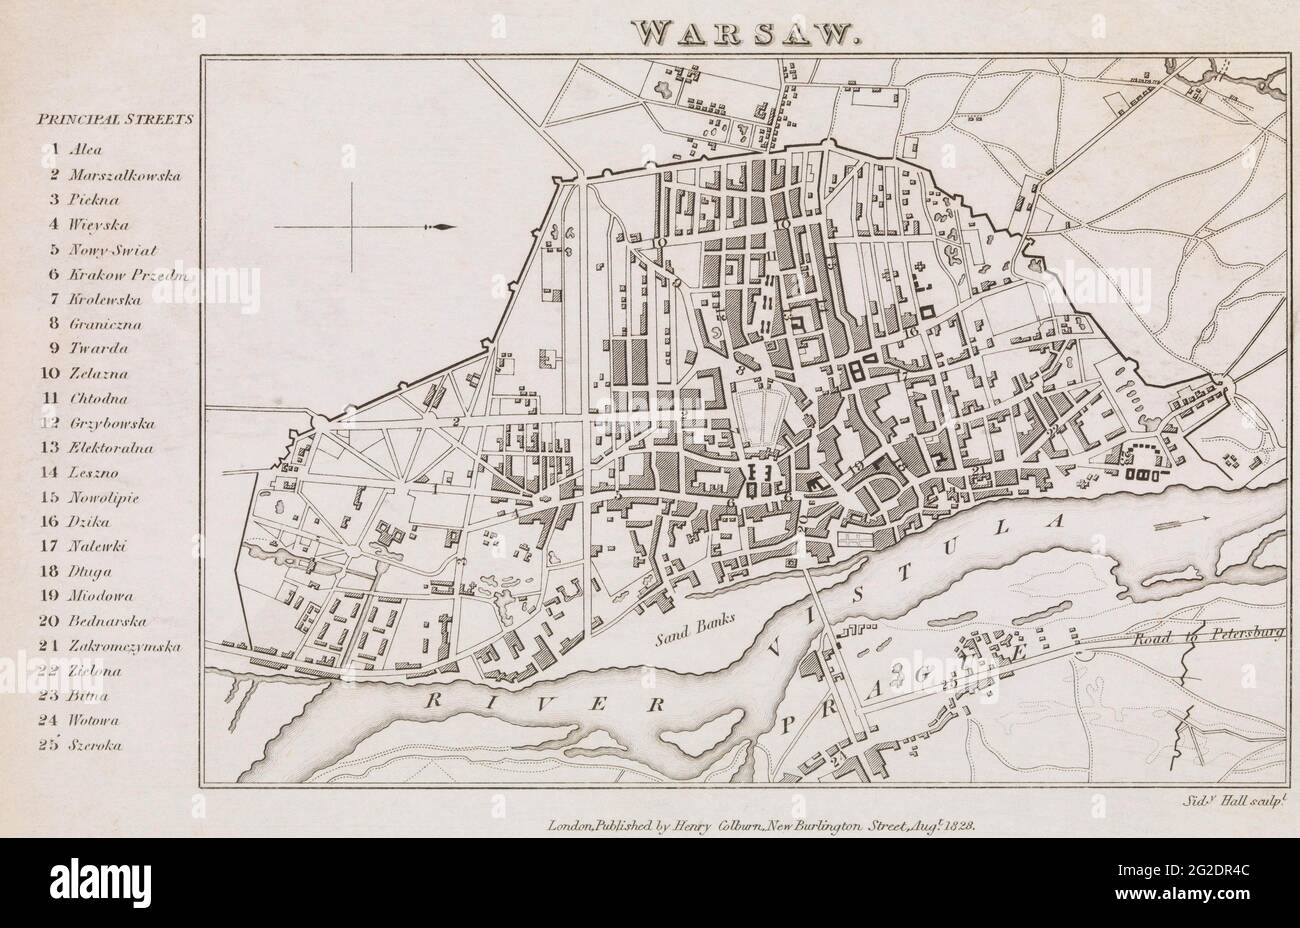 Warsaw Map, Warsaw City Print, Warsaw Art, Europe Map, Map of Poland, Map of Warsaw, Poland Map Art, Vintage City Map, Poland Map, Retro Poland, 1828 Stock Photo